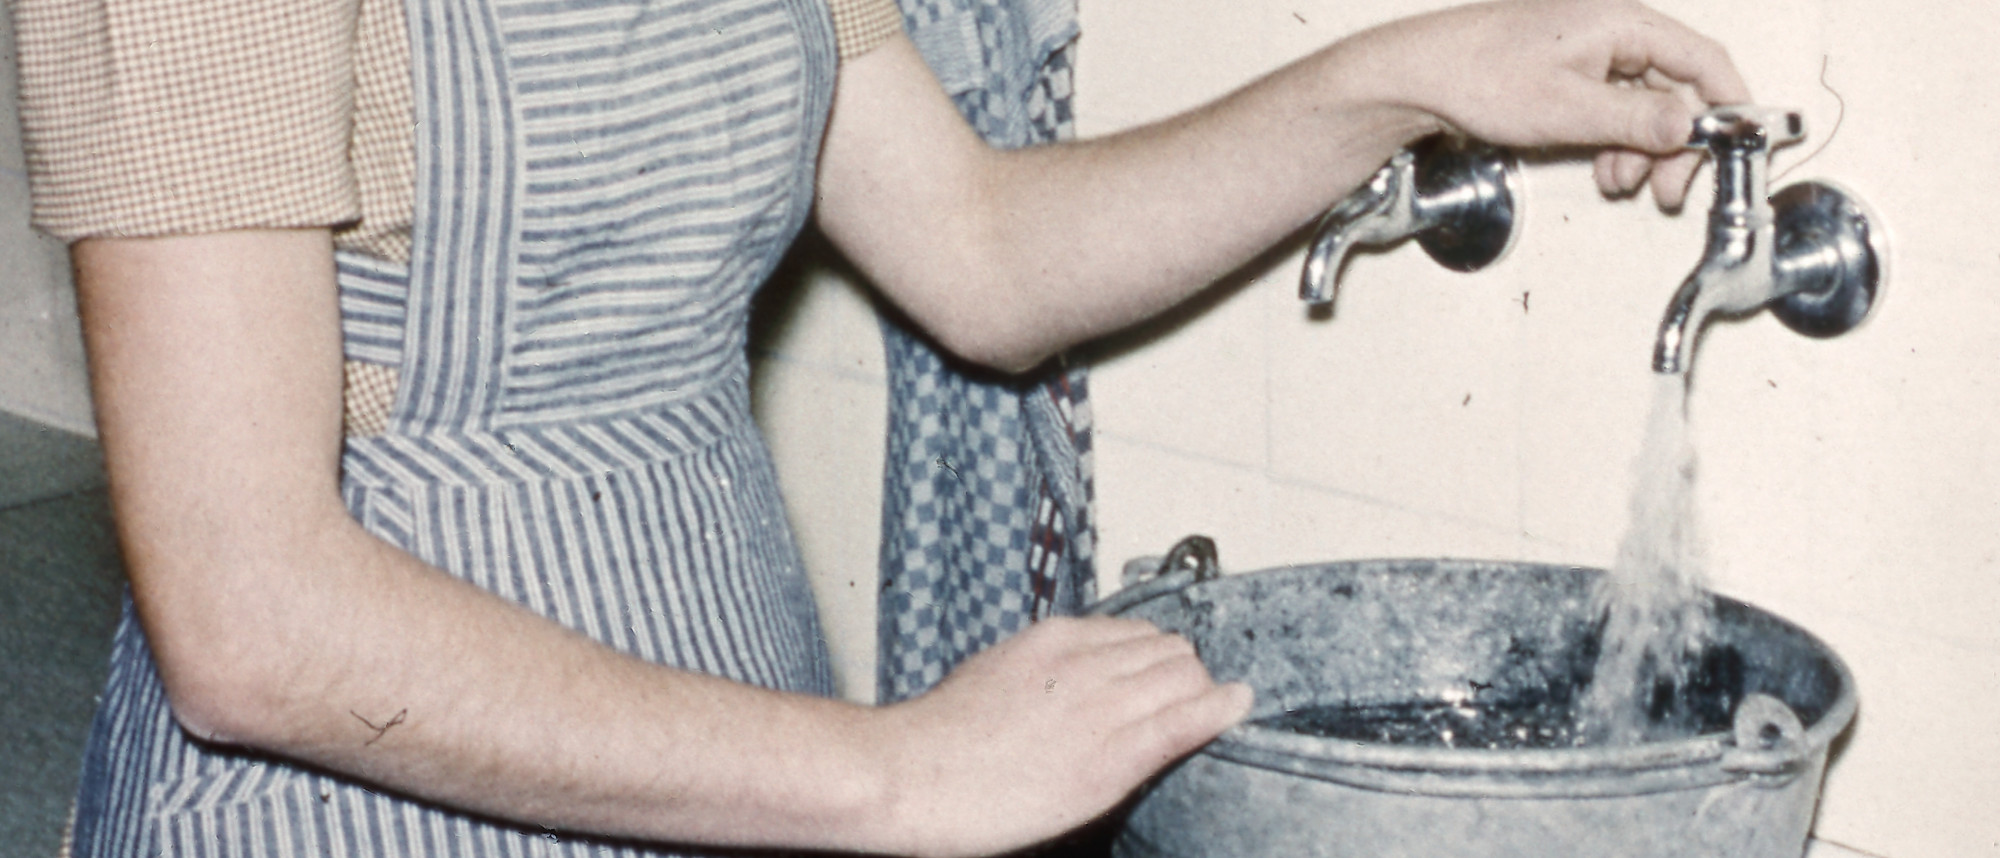 Frau befüllt Eimer am Wasserhahn